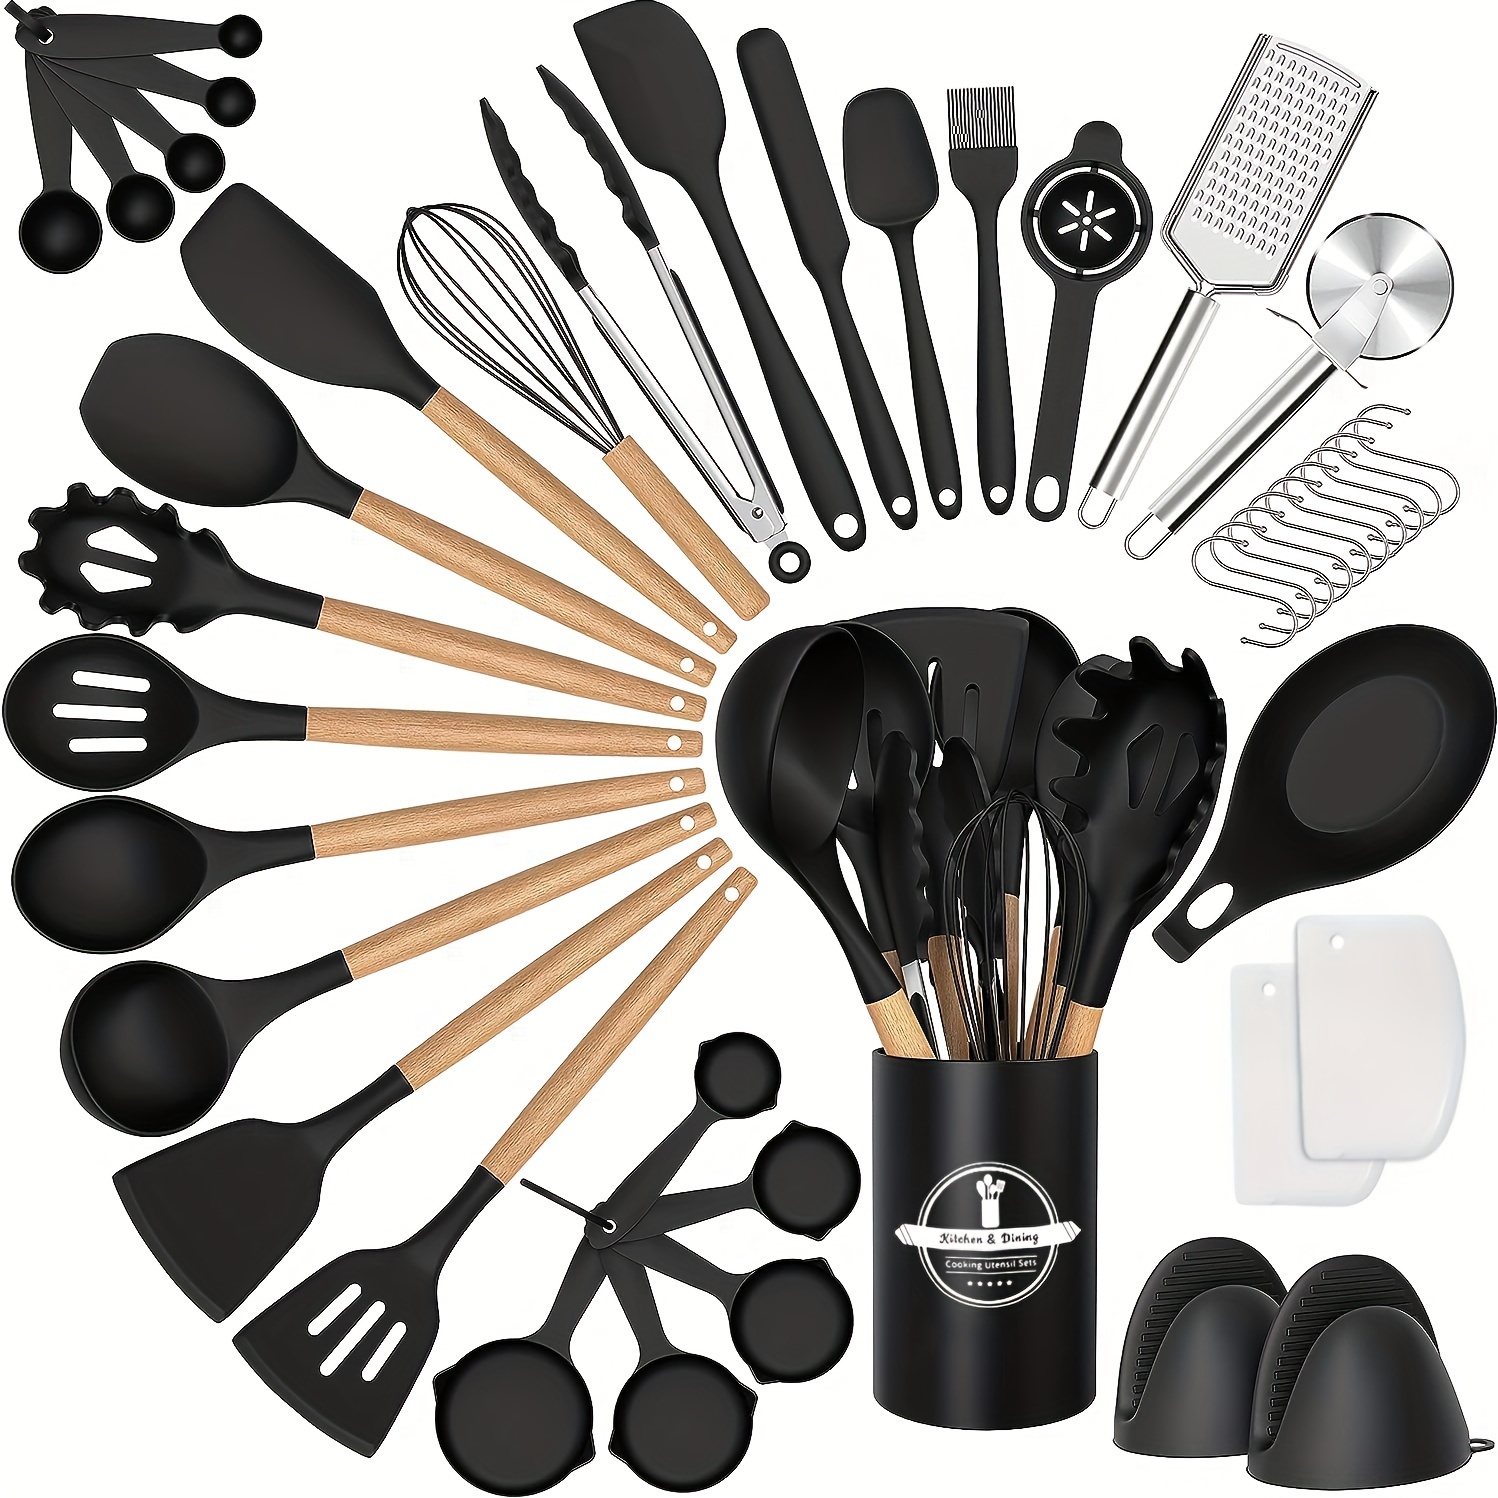 Juego de 12 utensilios de cocina de silicona para cocina, juego de  utensilios de cocina de silicona, juego de espátulas, utensilios de cocina,  juego